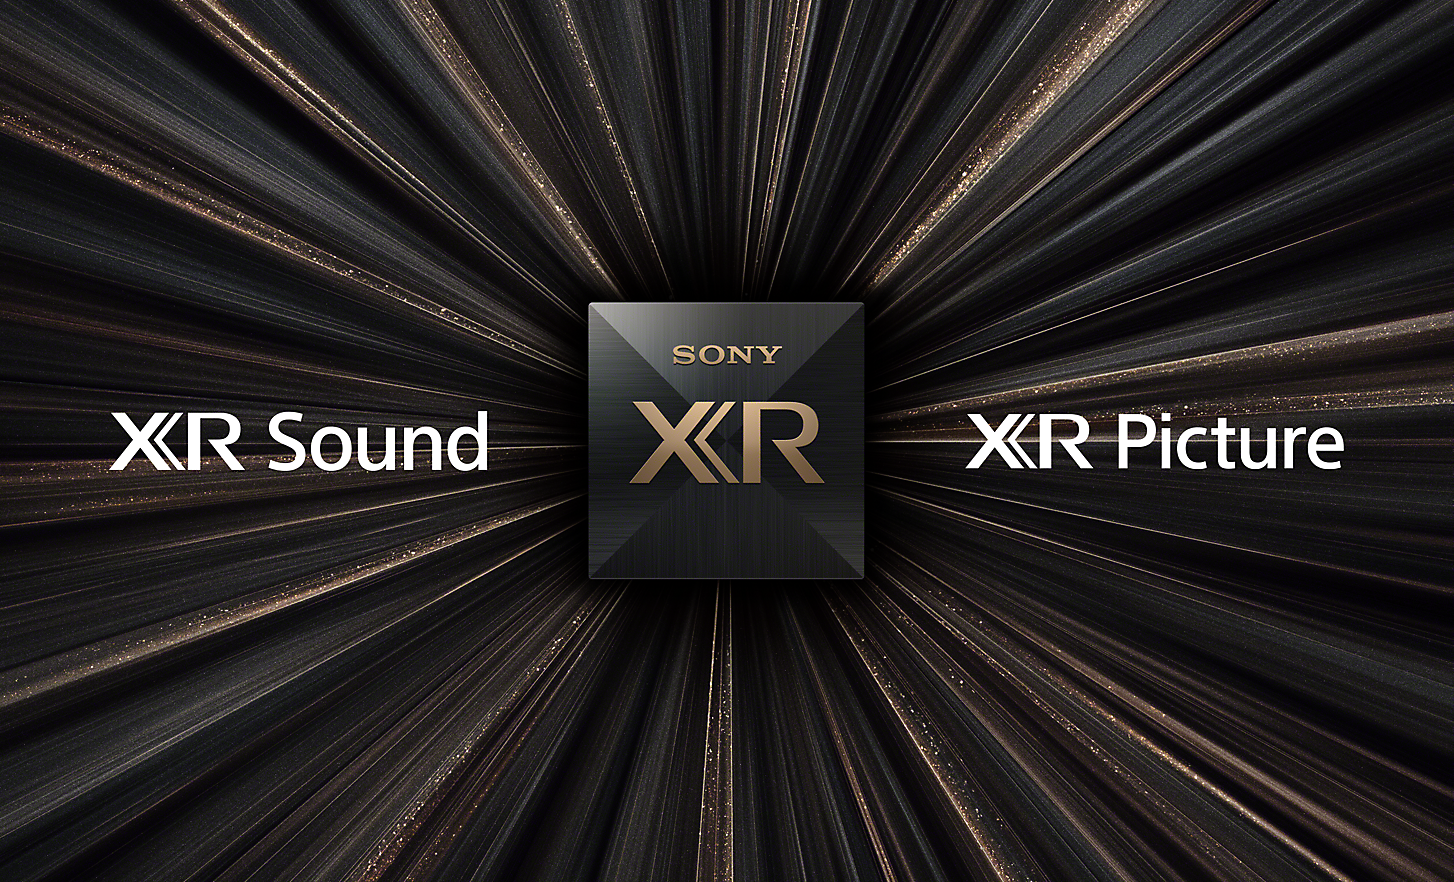 „Cognitive Processor XR“ lusto vaizdas ant juodo fono su aukso dulkėmis ir išryškintais žodžiais „XR Picture“ ir „XR Sound“